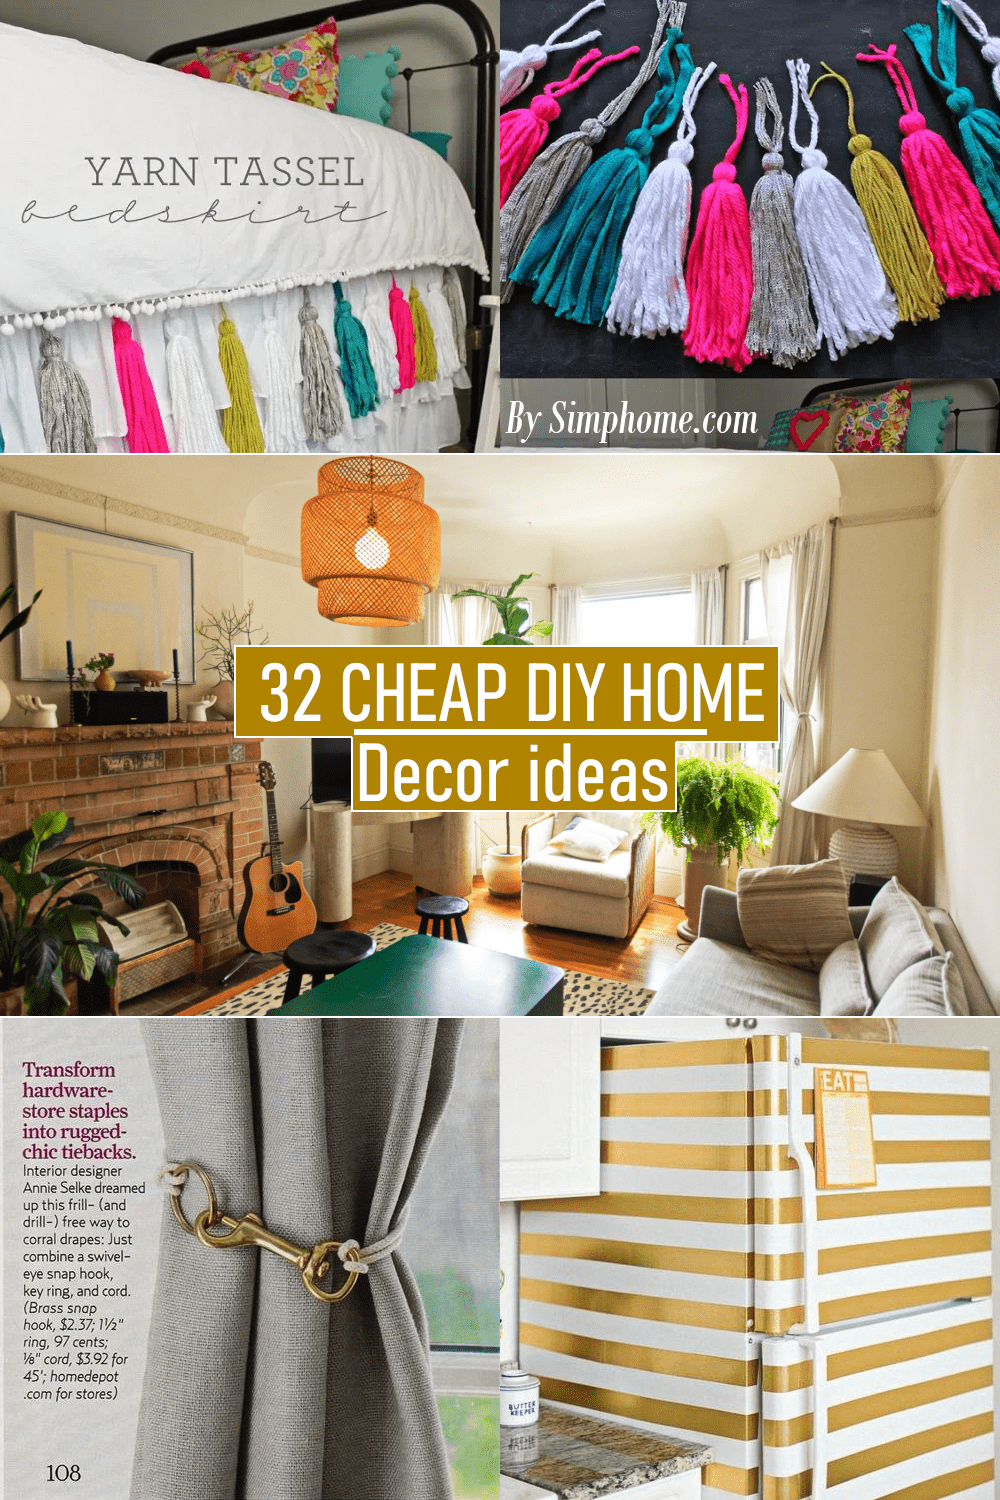 32 Cheap DIY Home Decor ideas via Simphome.com